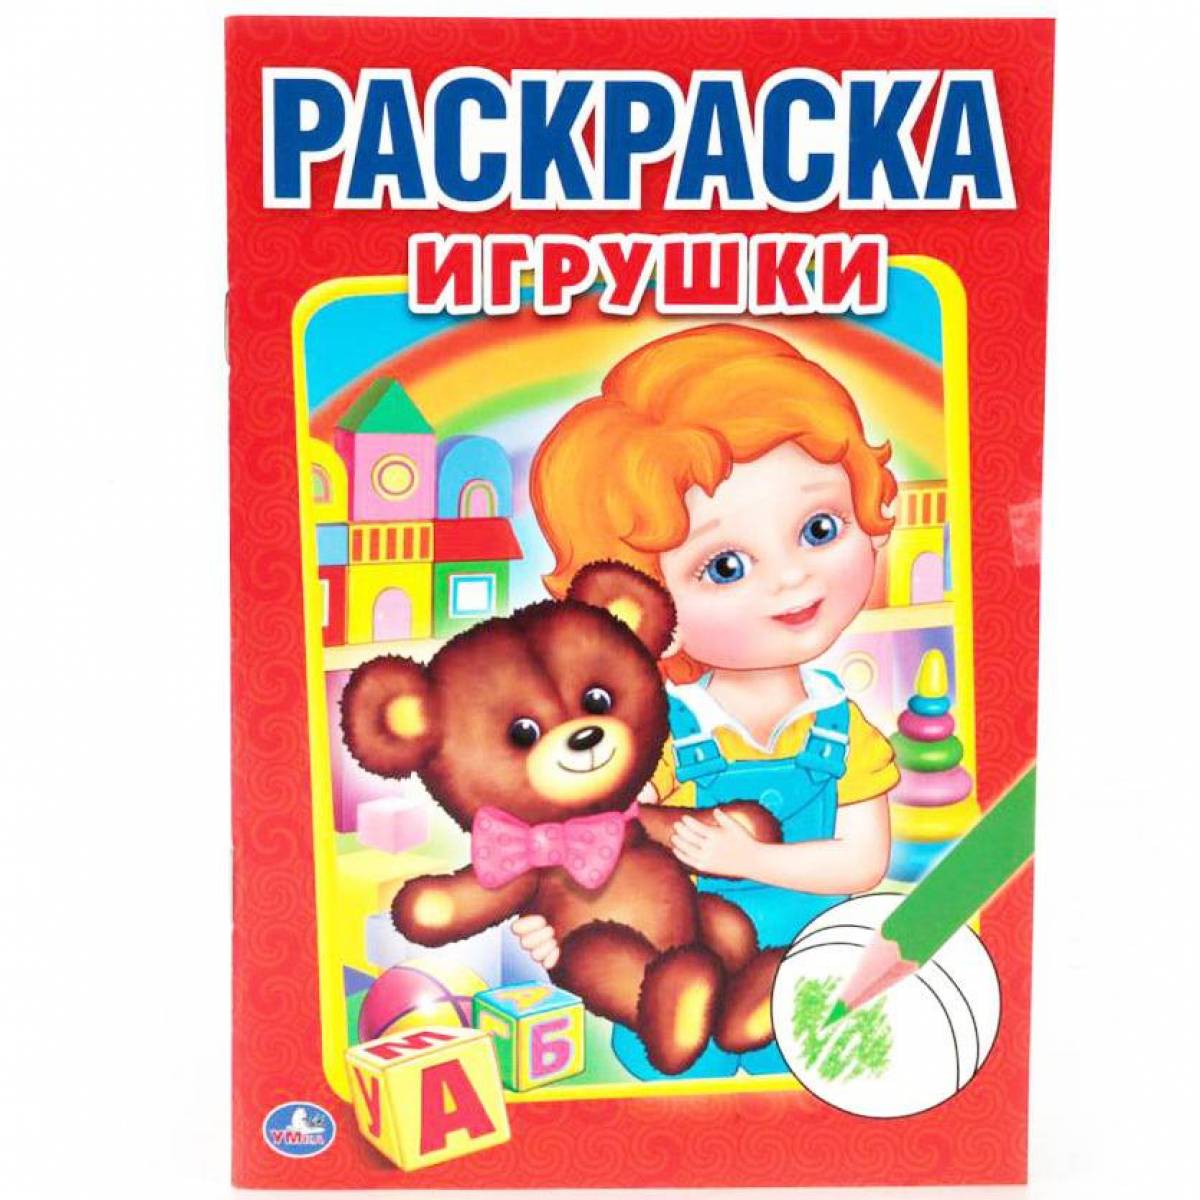 Fun Umka coloring book for preschoolers